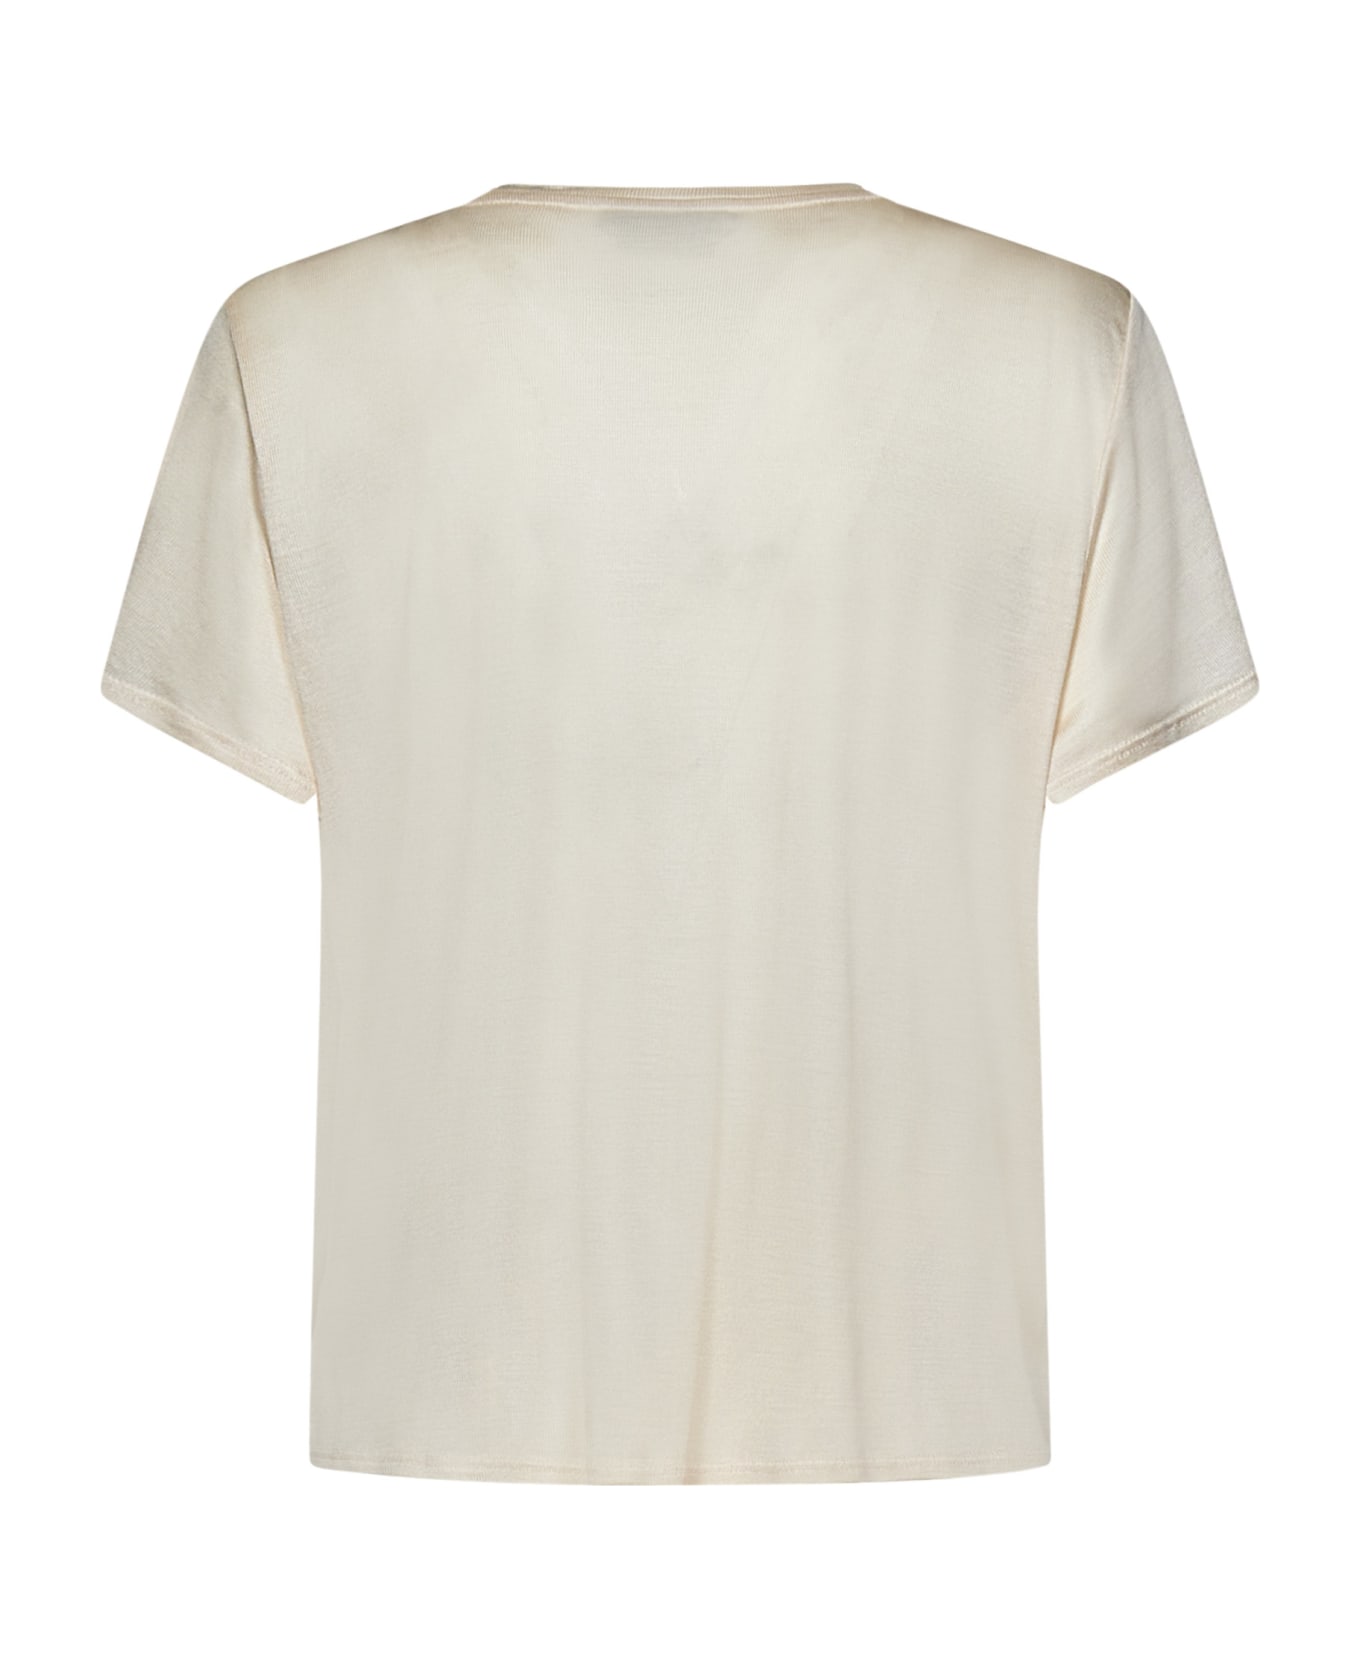 Tom Ford T-shirt - CREAM Tシャツ